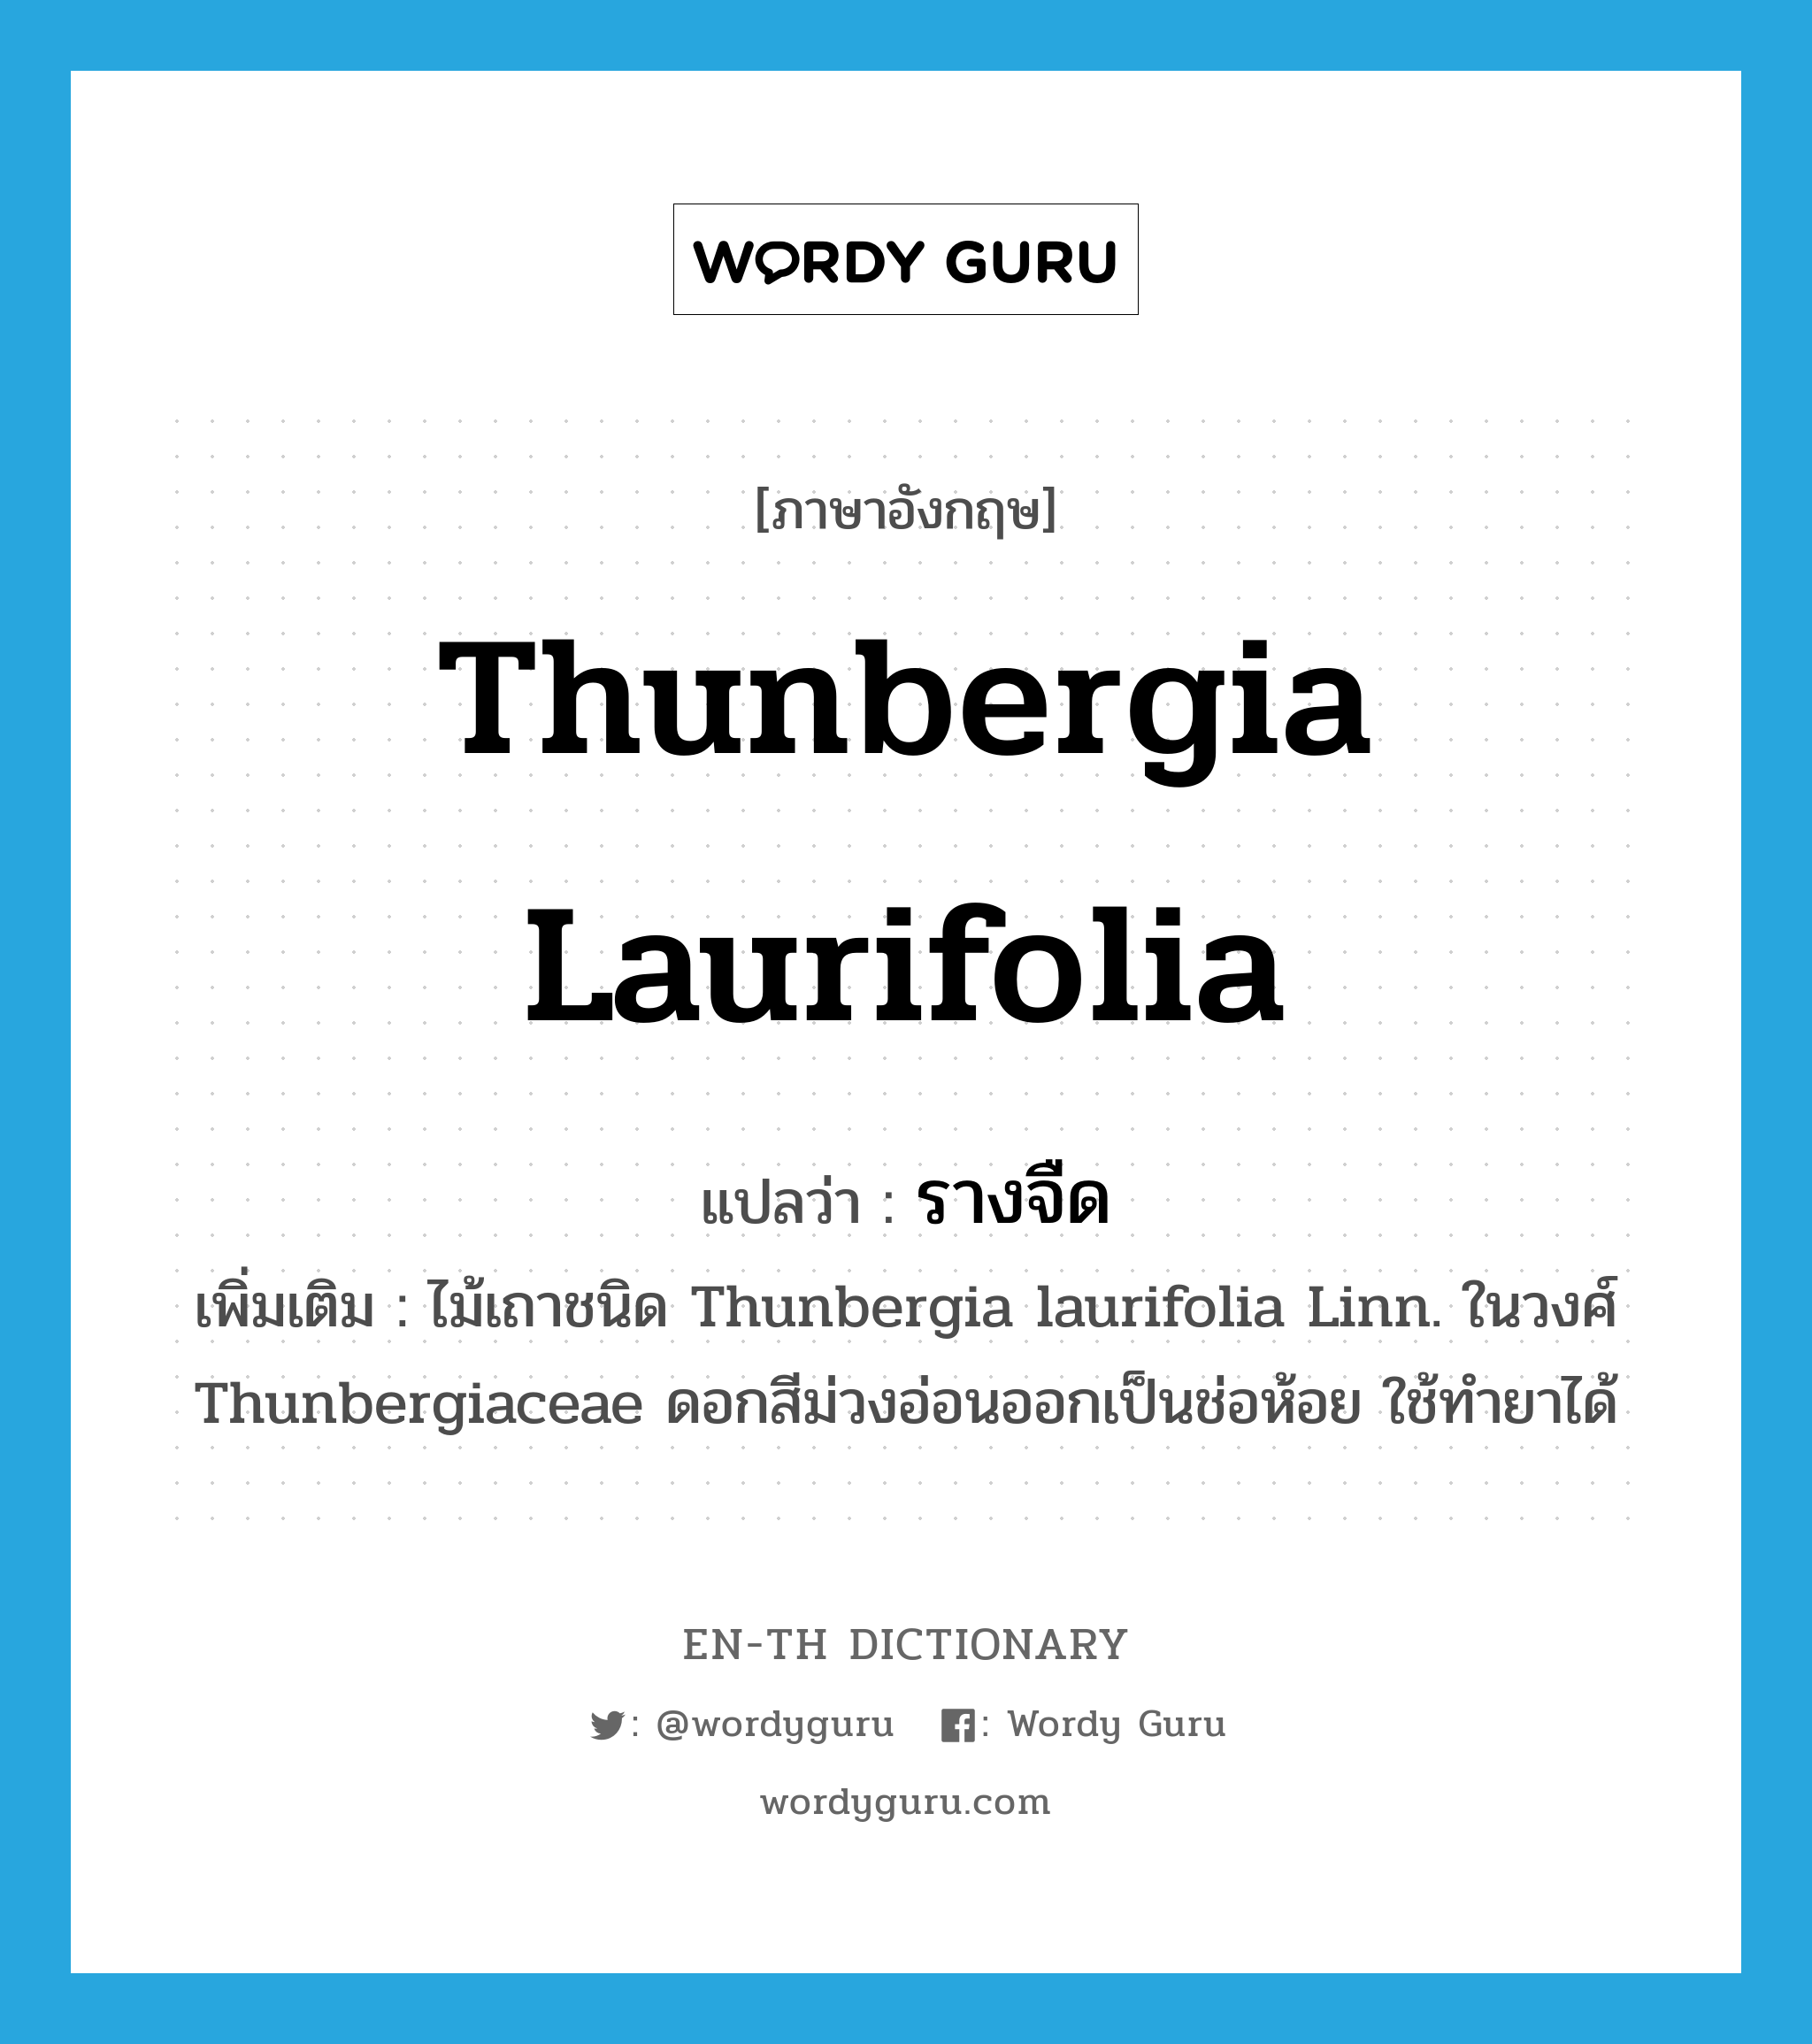 Thunbergia laurifolia แปลว่า?, คำศัพท์ภาษาอังกฤษ Thunbergia laurifolia แปลว่า รางจืด ประเภท N เพิ่มเติม ไม้เถาชนิด Thunbergia laurifolia Linn. ในวงศ์ Thunbergiaceae ดอกสีม่วงอ่อนออกเป็นช่อห้อย ใช้ทำยาได้ หมวด N